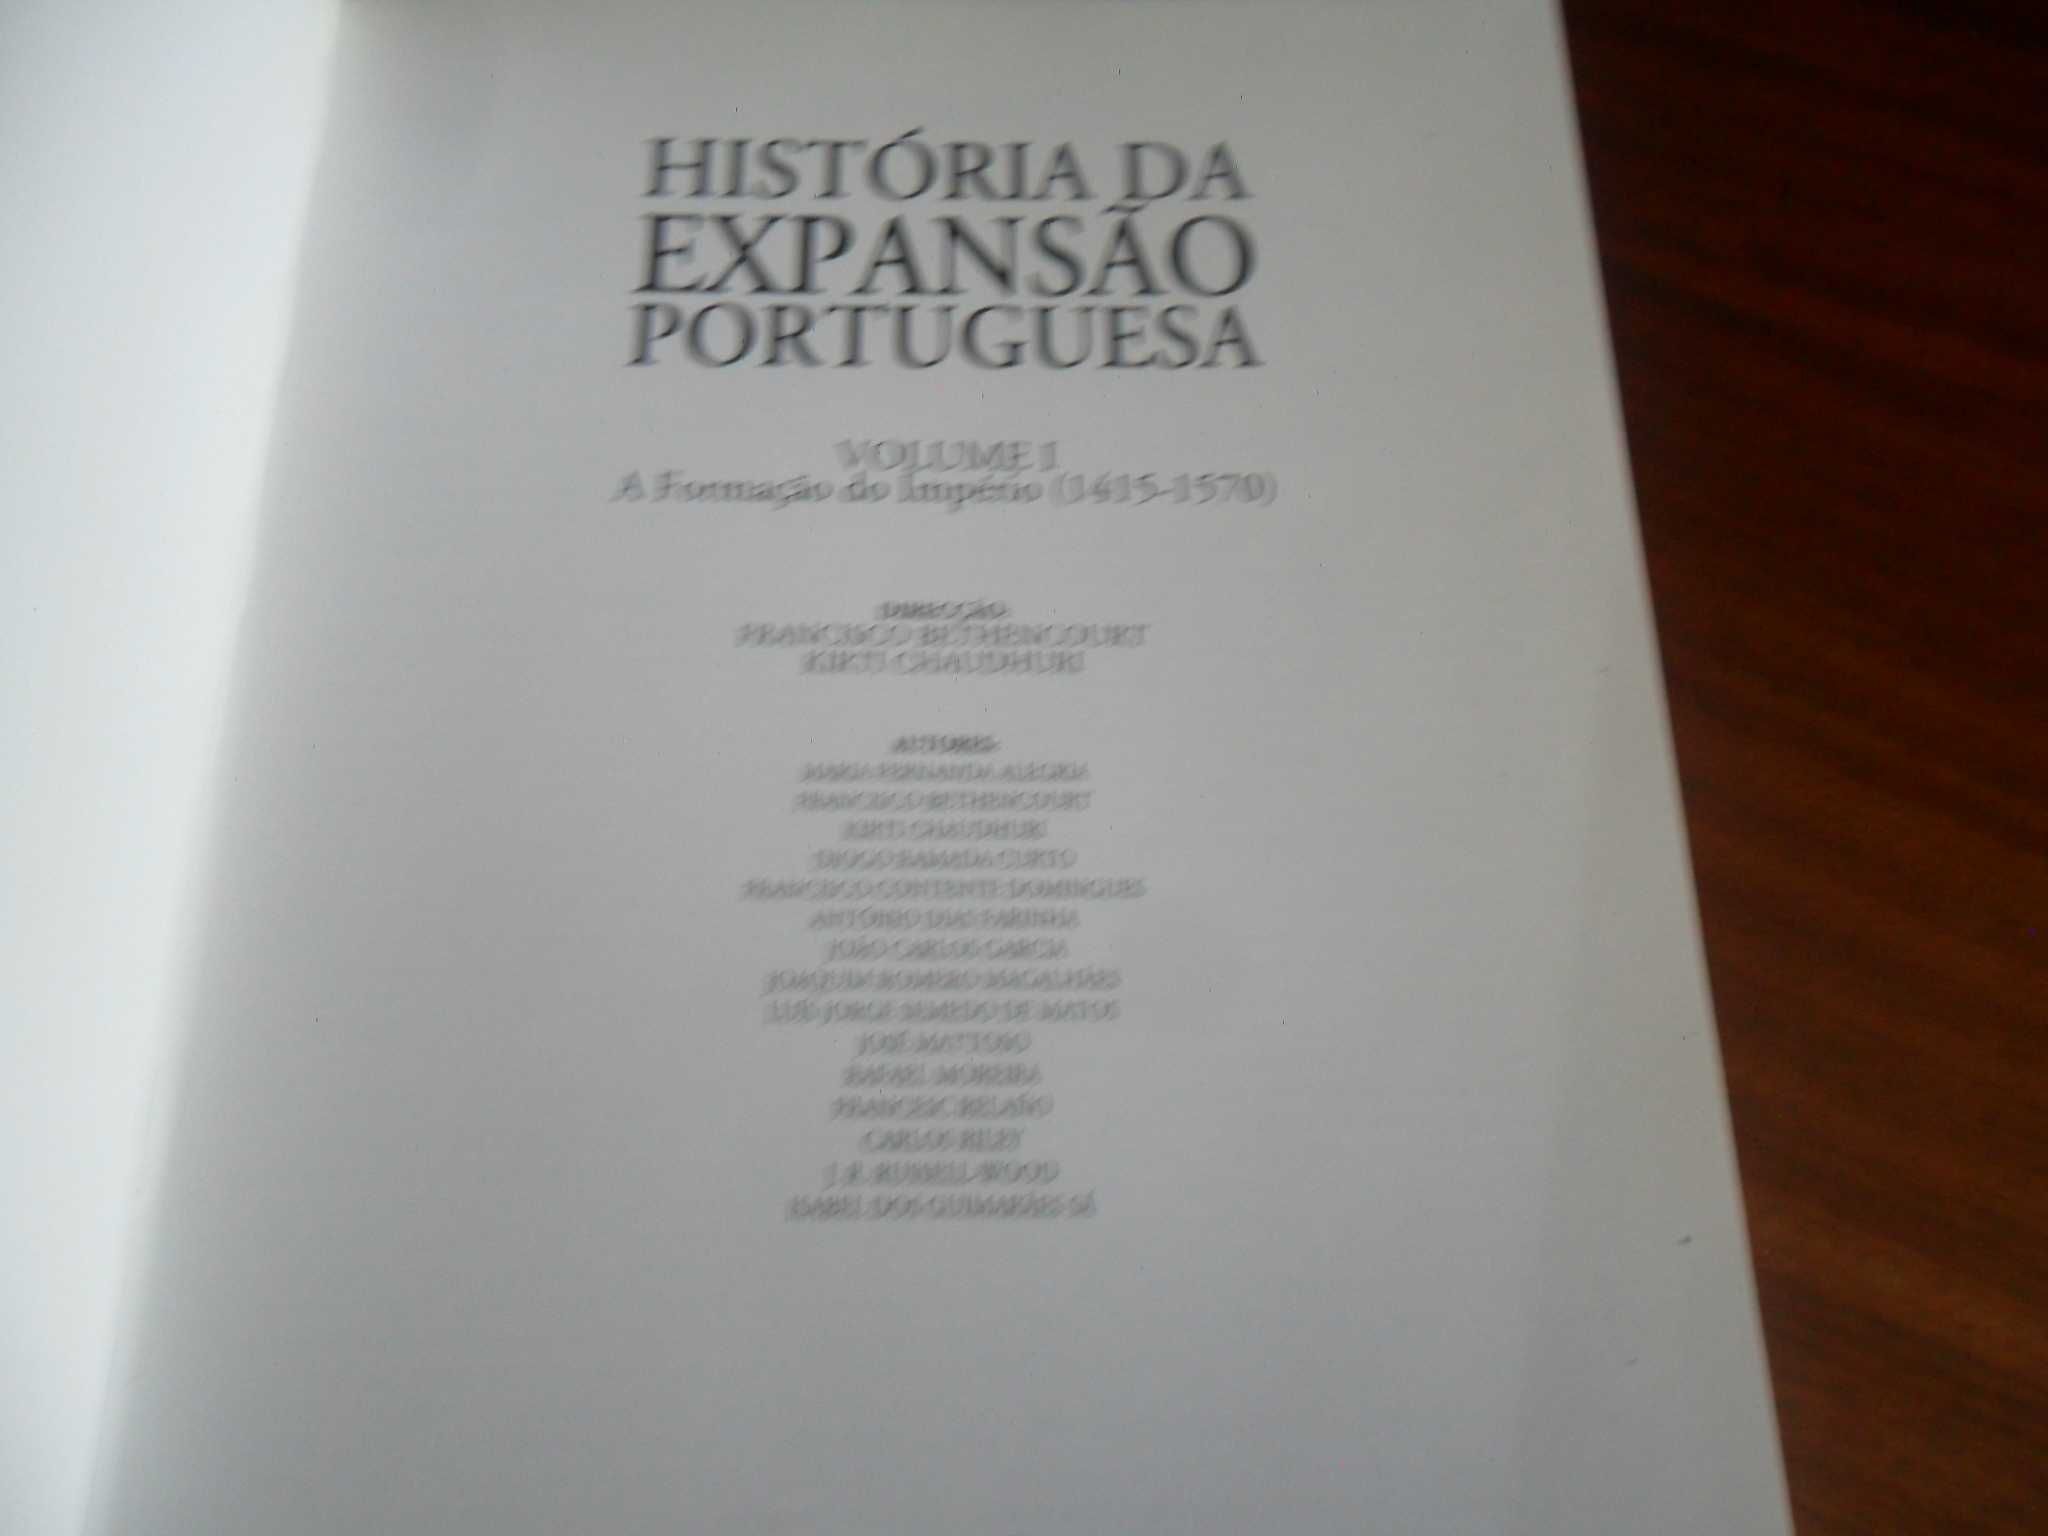 "História da Expansão Portuguesa" -5 Vol- F Bethencourt e K. Chaudhuri